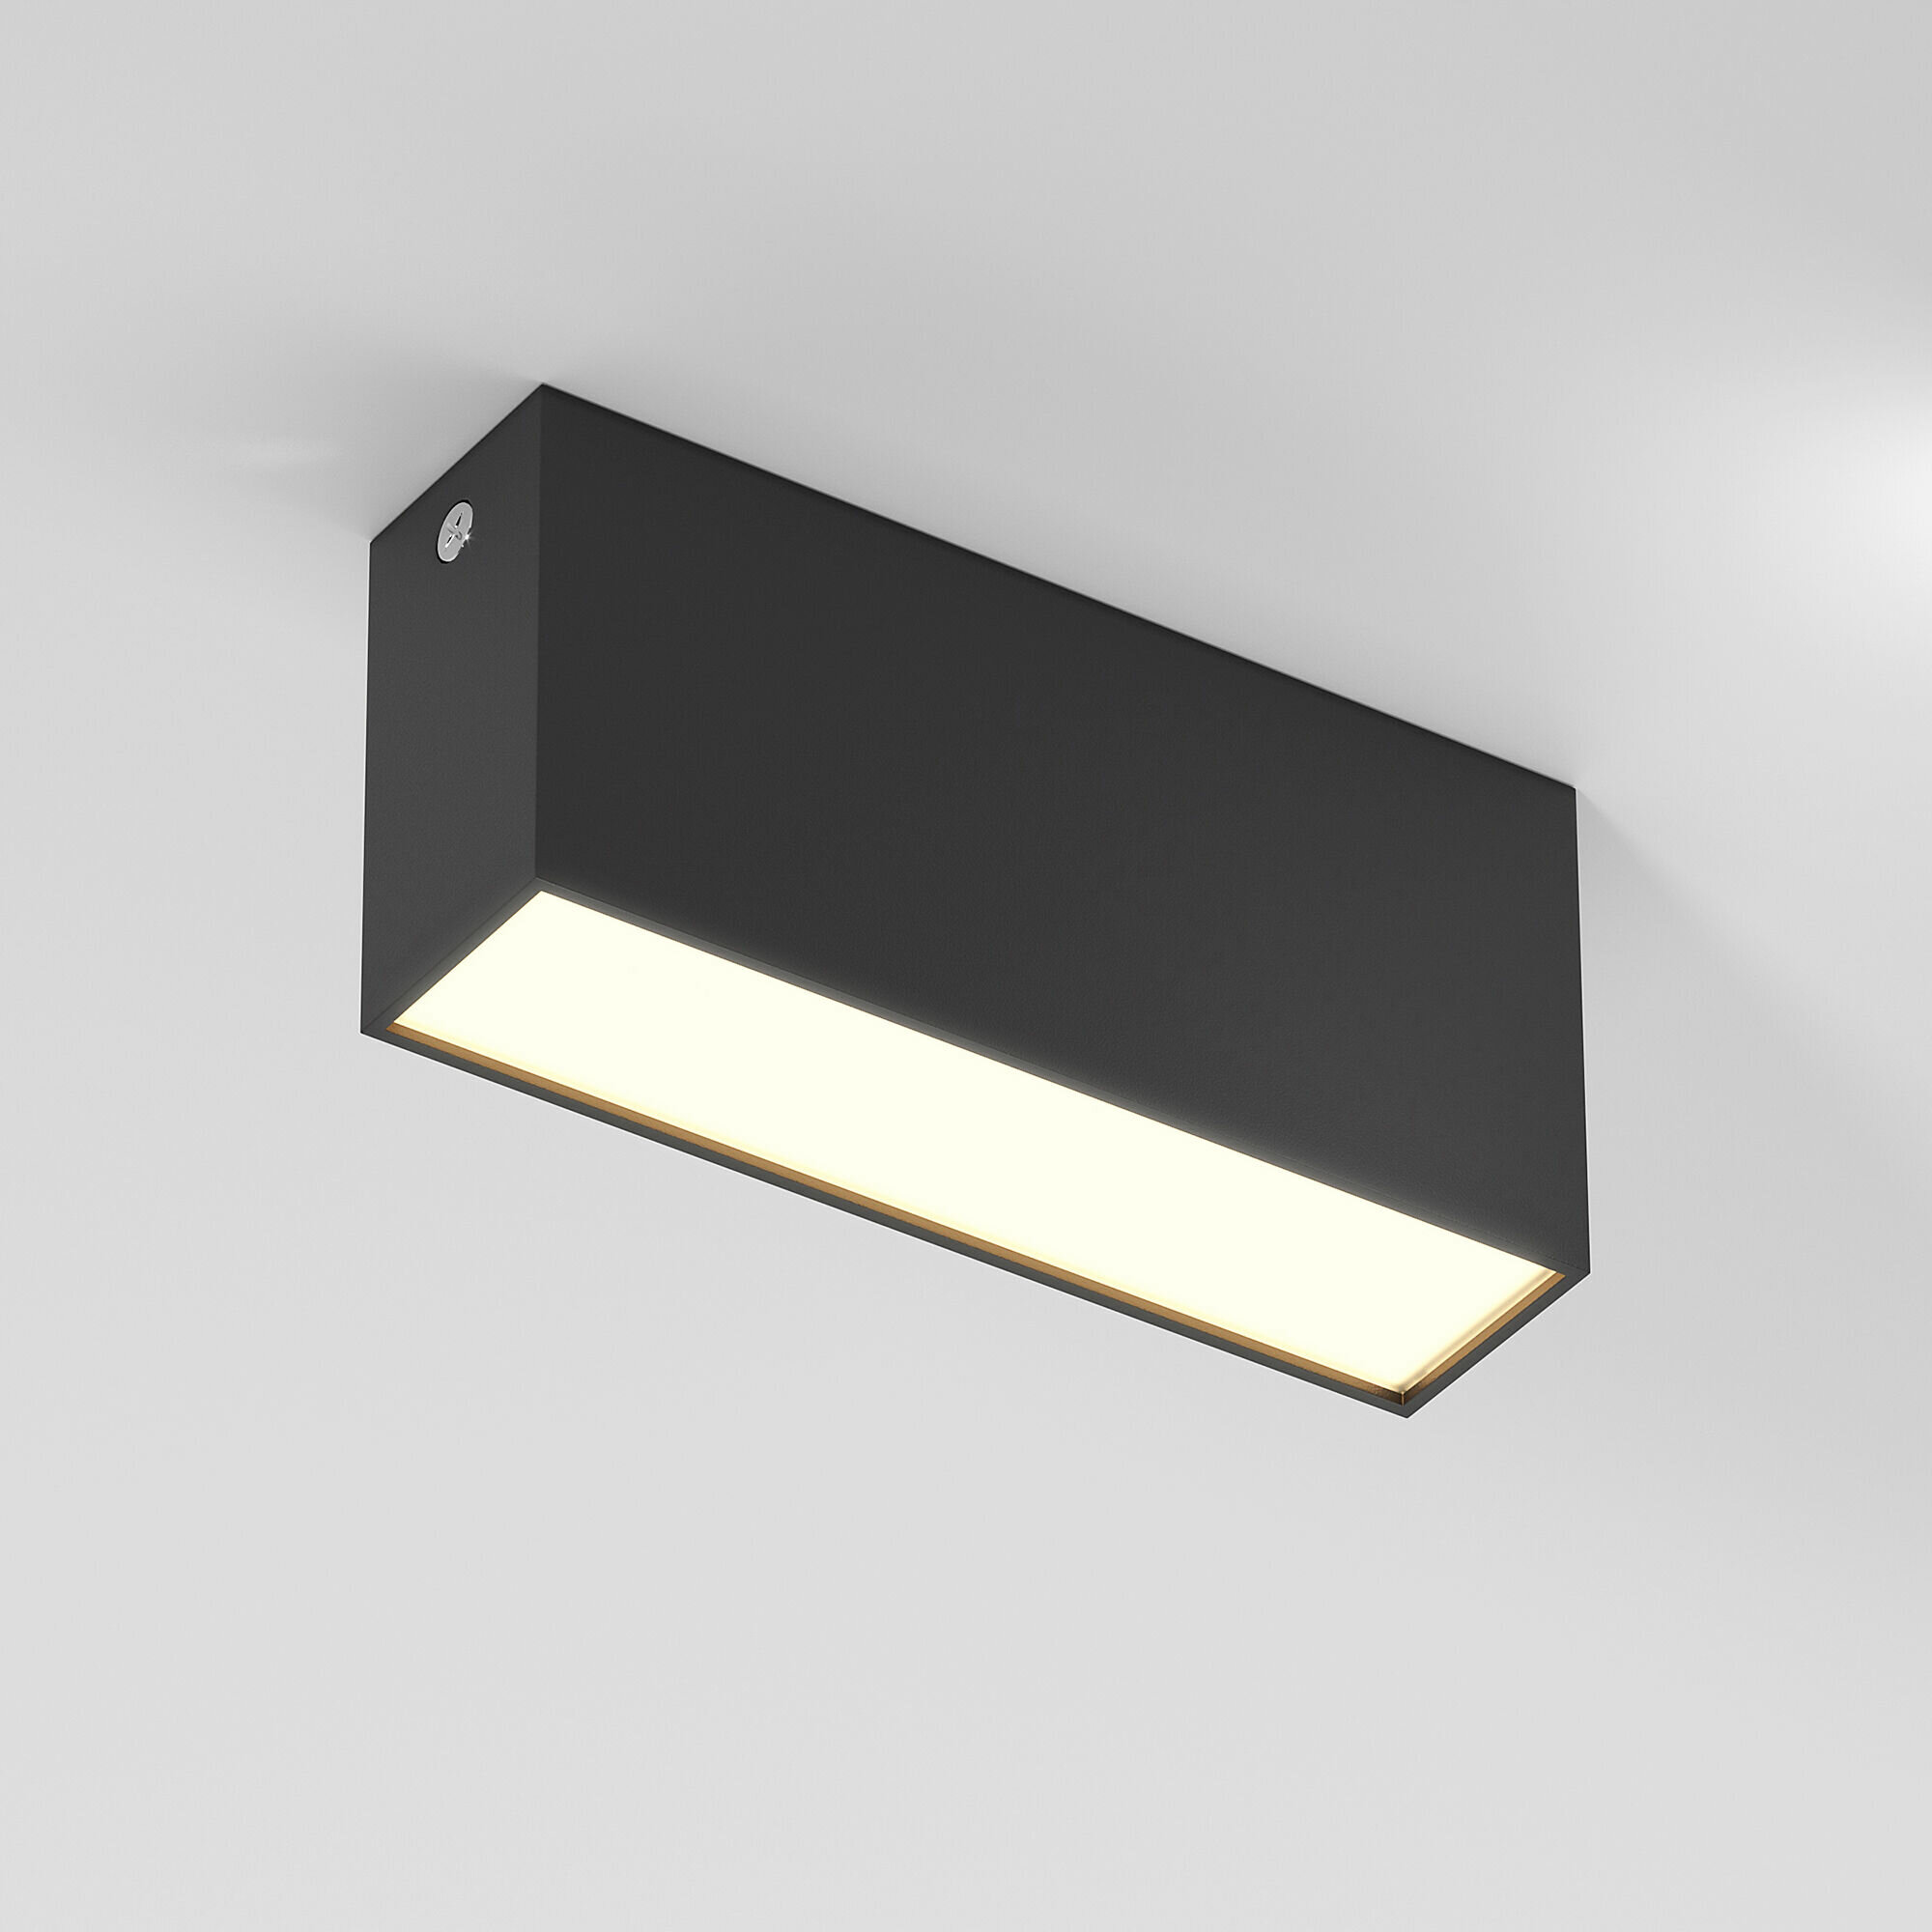 Спот / Накладной потолочный светодиодный светильник Elektrostandard Block 25109/LED, 10 Вт, 3000 K, цвет черный